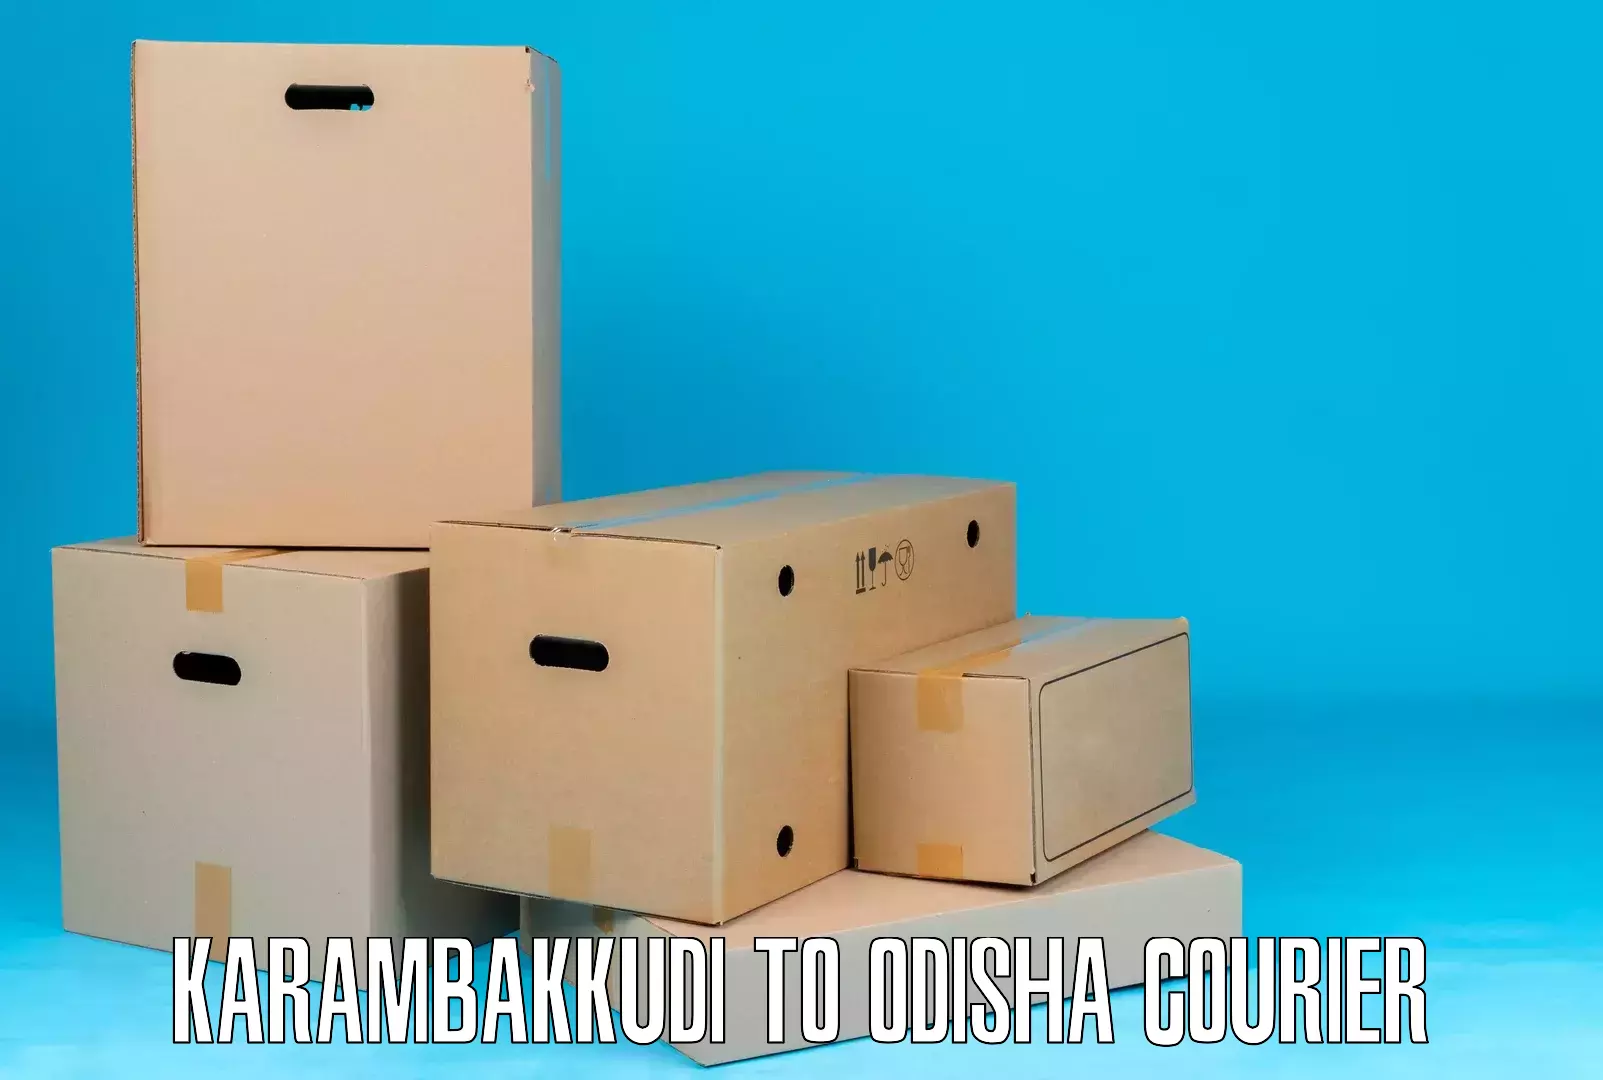 Logistics and distribution Karambakkudi to Borigumma